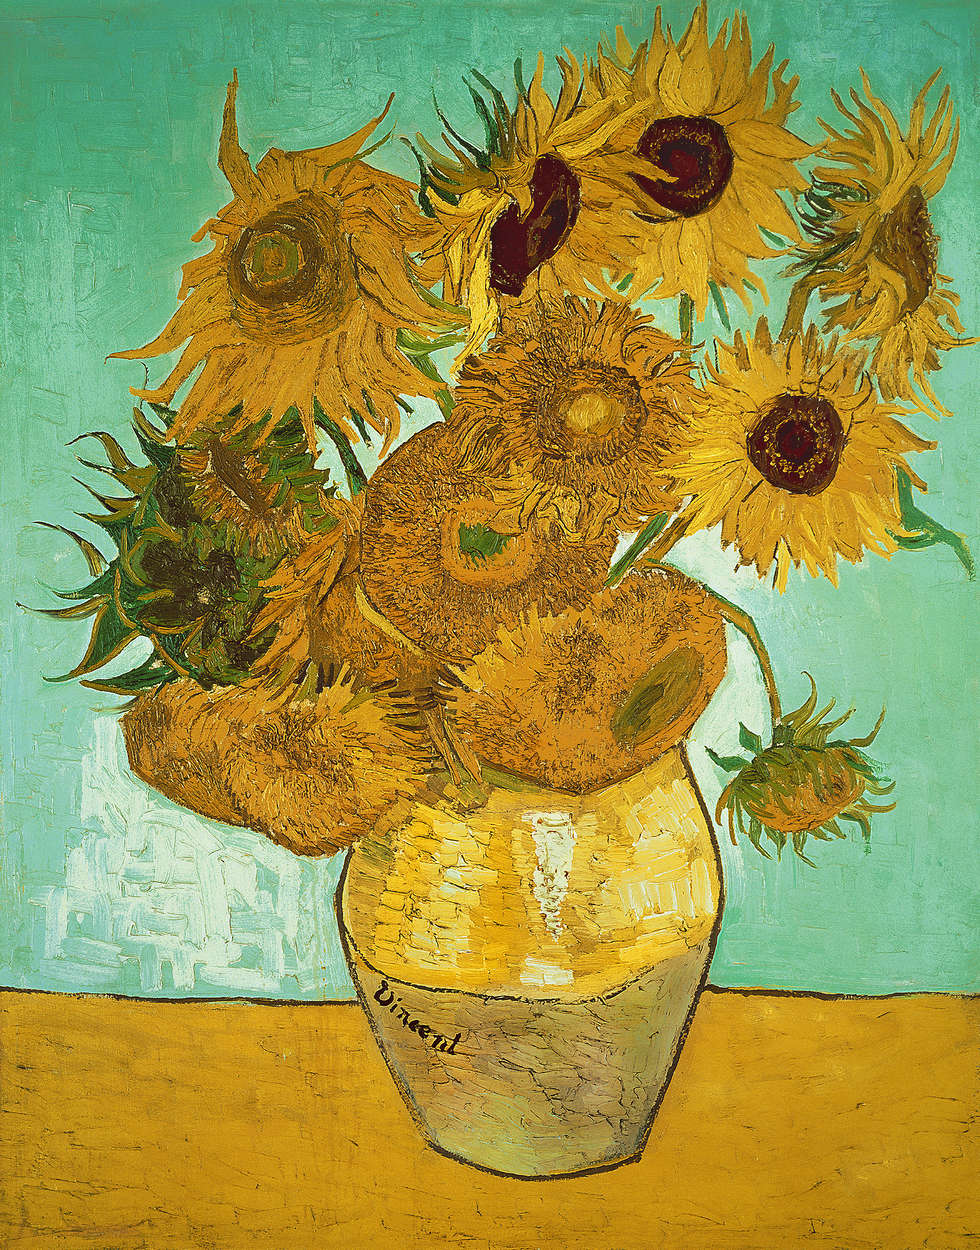             Zonnebloemen" muurschildering van Vincent van Gogh
        